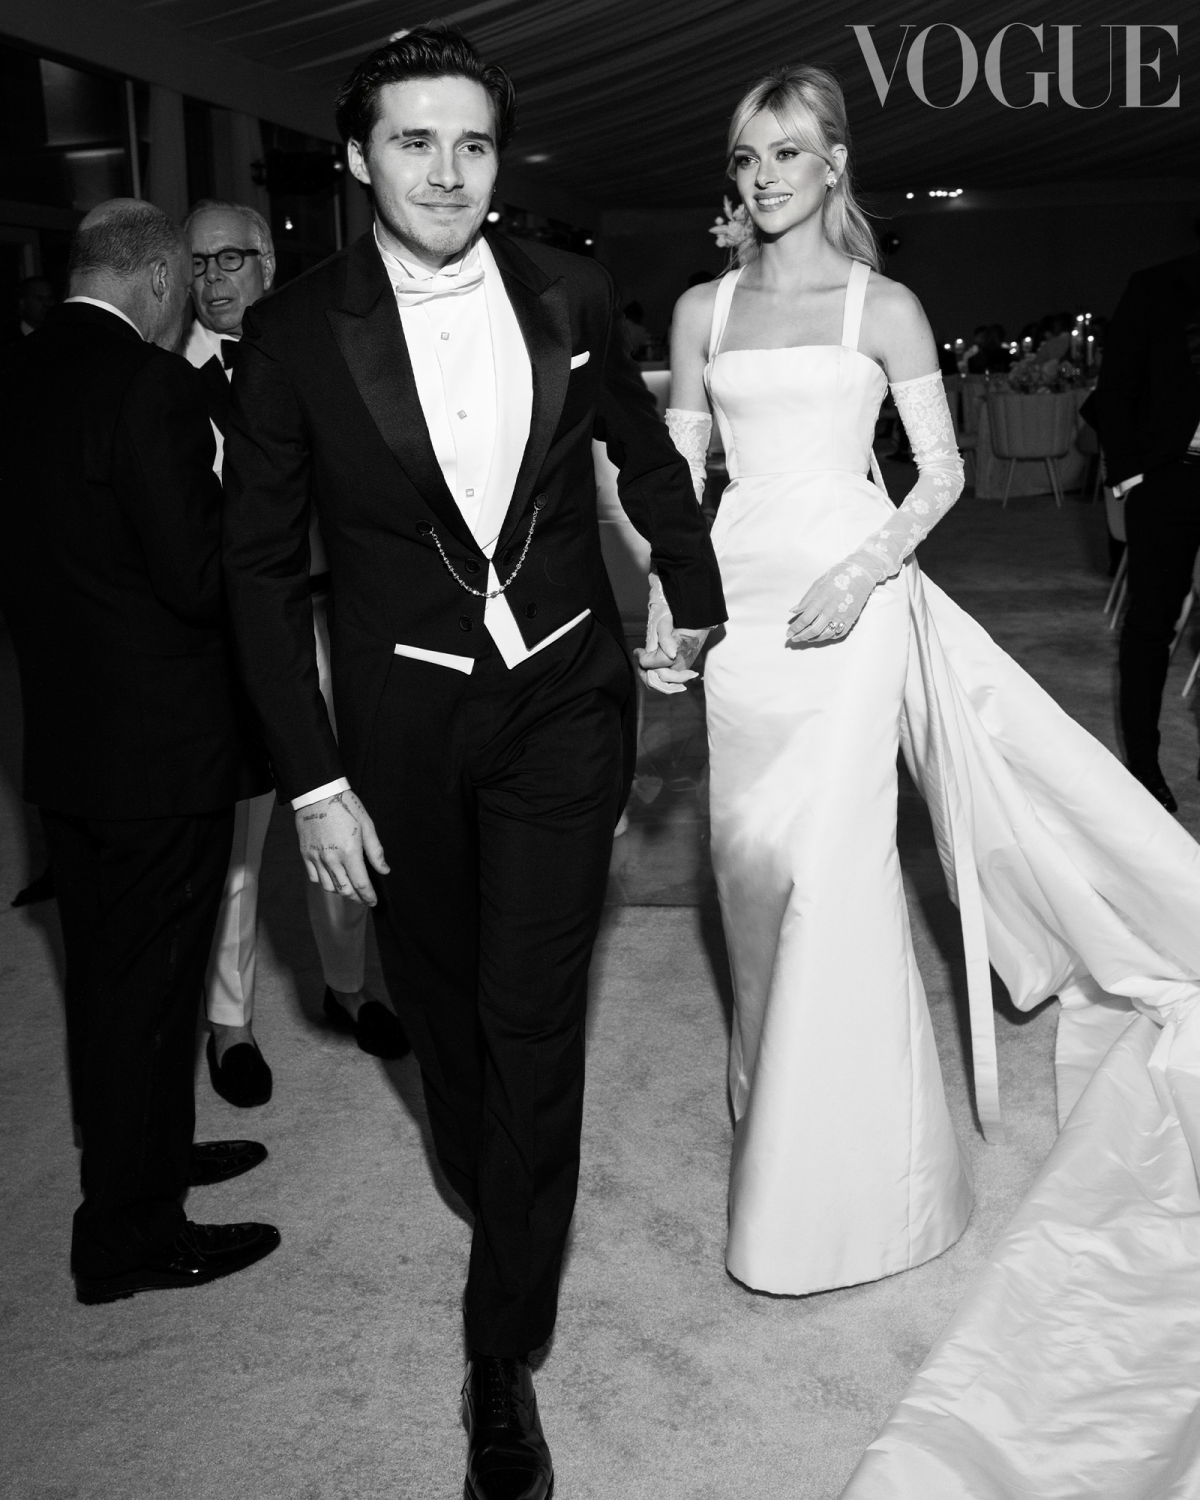 Đám cưới của Brooklyn Beckham - con trai cả nhà David Beckham - Victoria Beckham và tiểu thư giàu có Nicola Peltz đã tốn không ít giấy mực của báo chí về độ xa hoa và hoành tráng. Đ